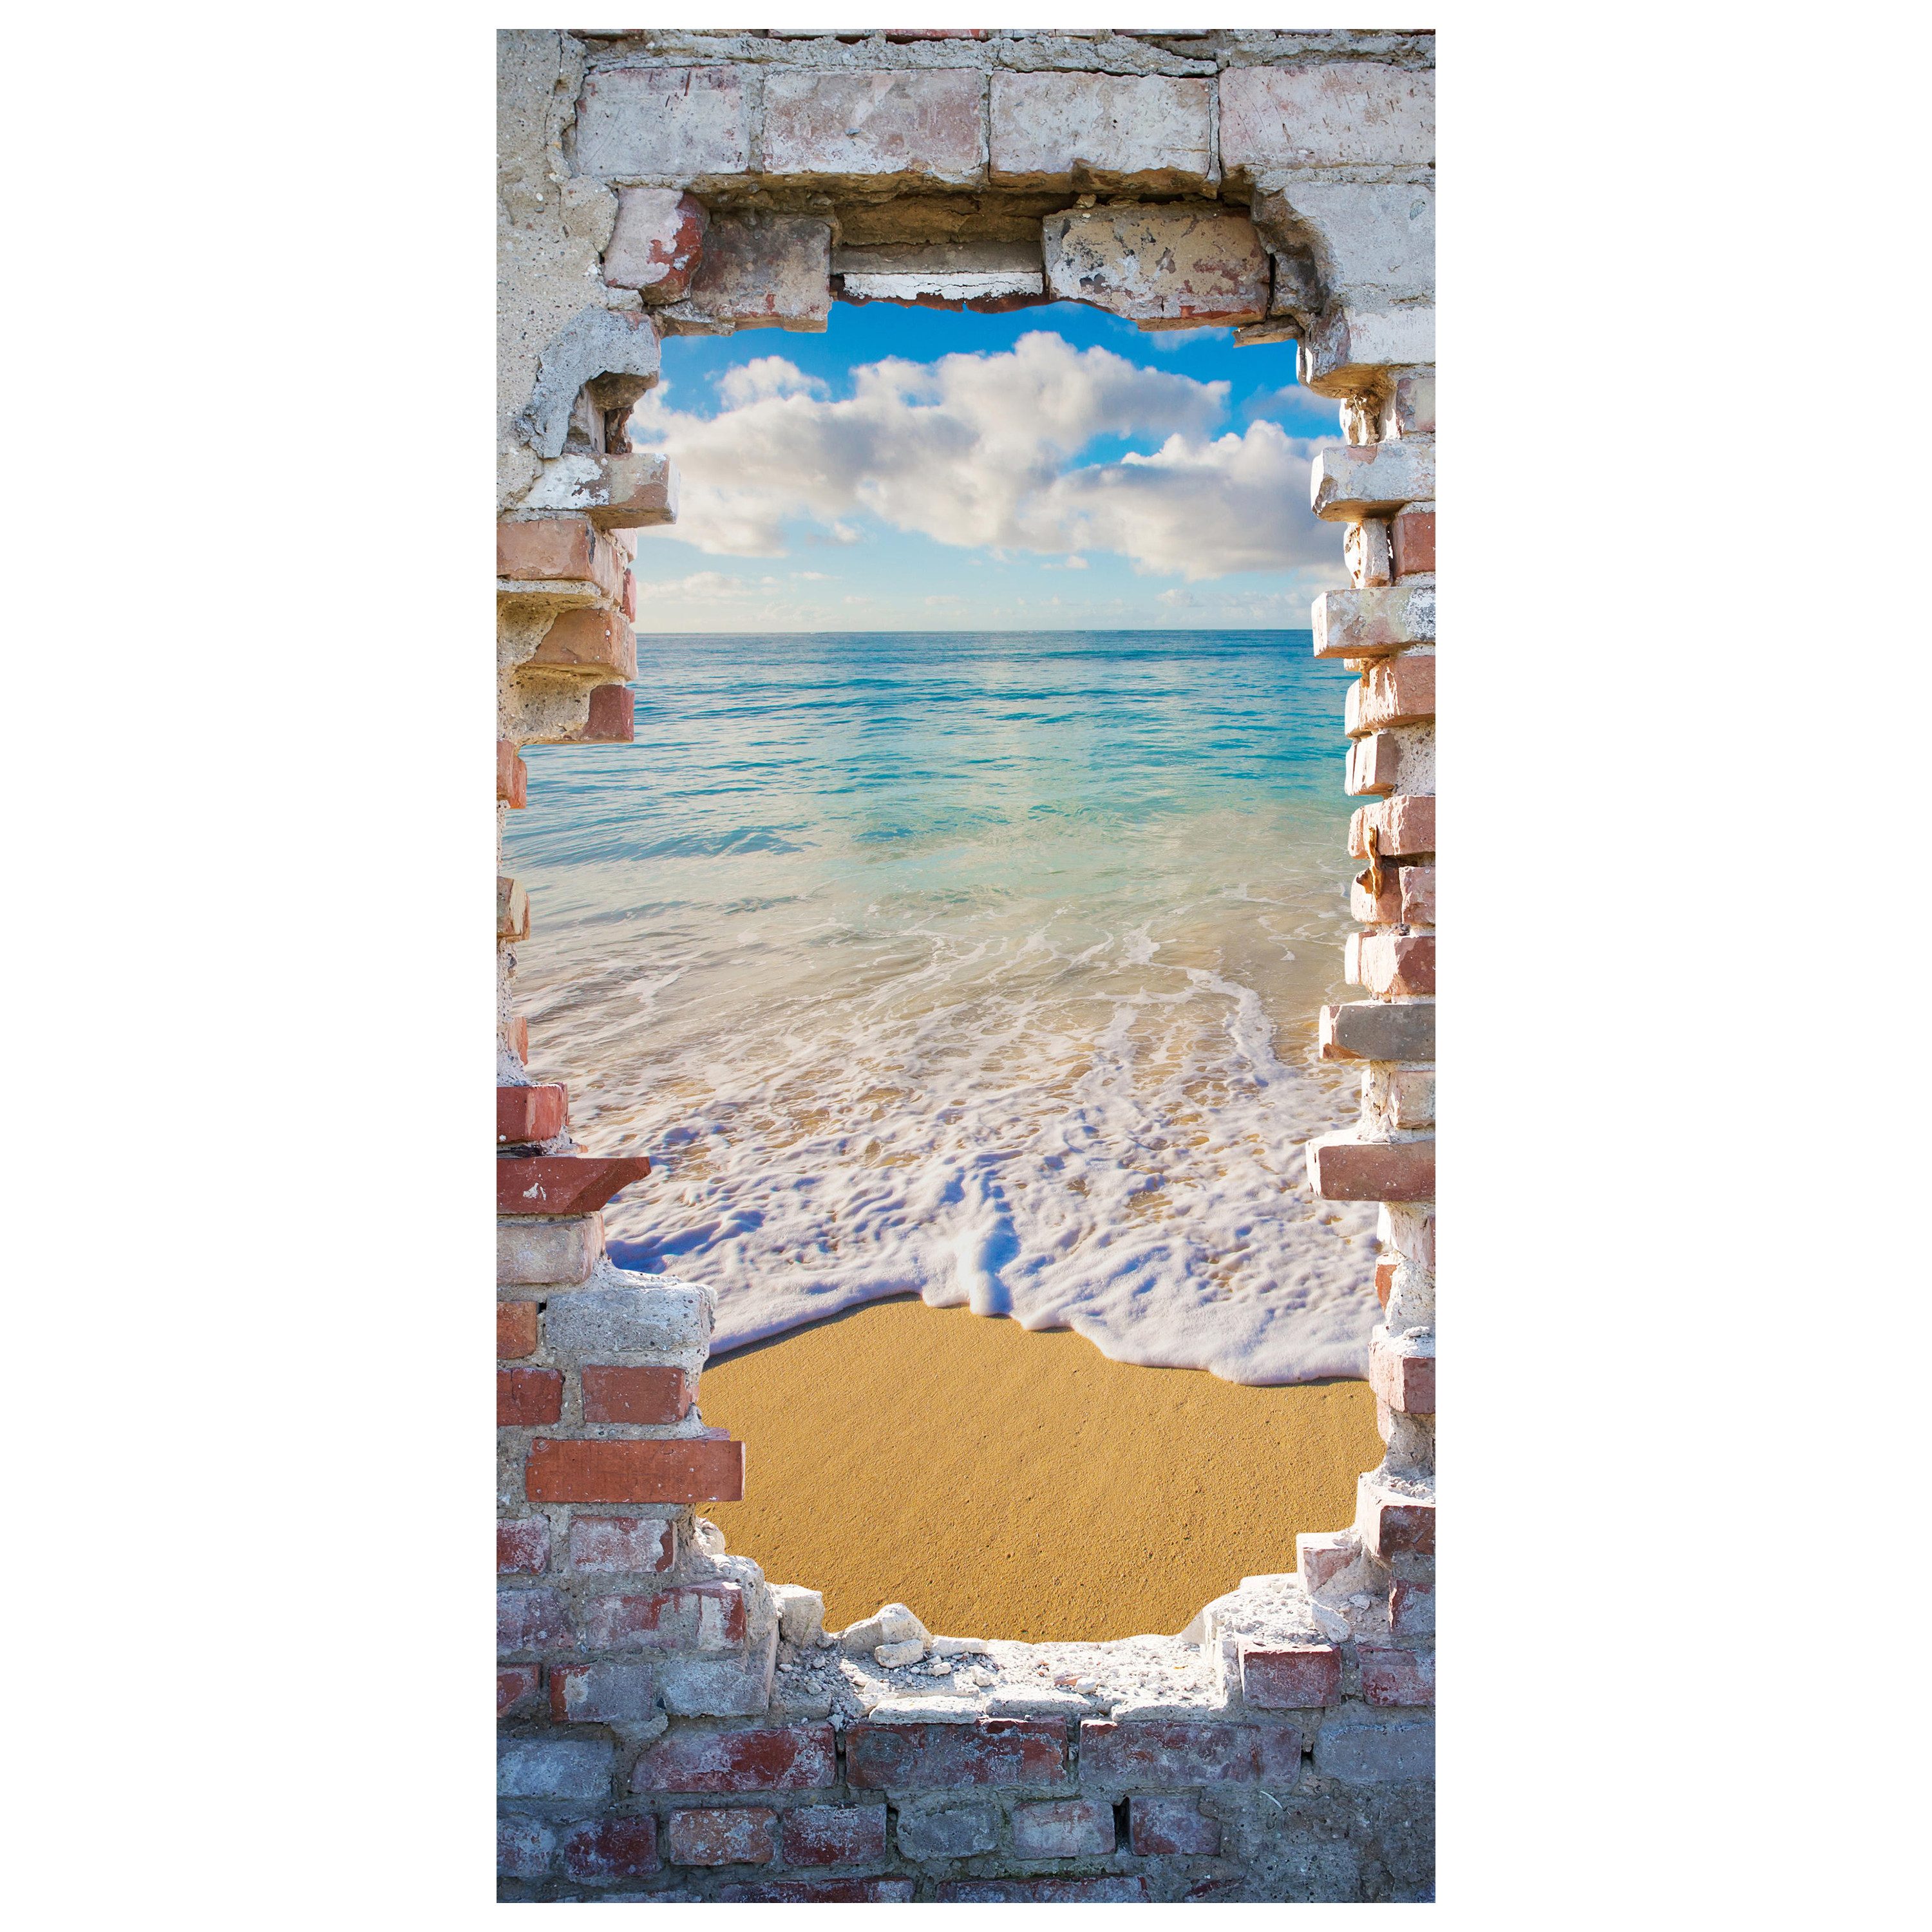 wandmotiv24 Türtapete 3D Steinwand, Ausblick, Meer, Strand, glatt, Fototapete, Wandtapete, Motivtapete, matt, selbstklebende Dekorfolie